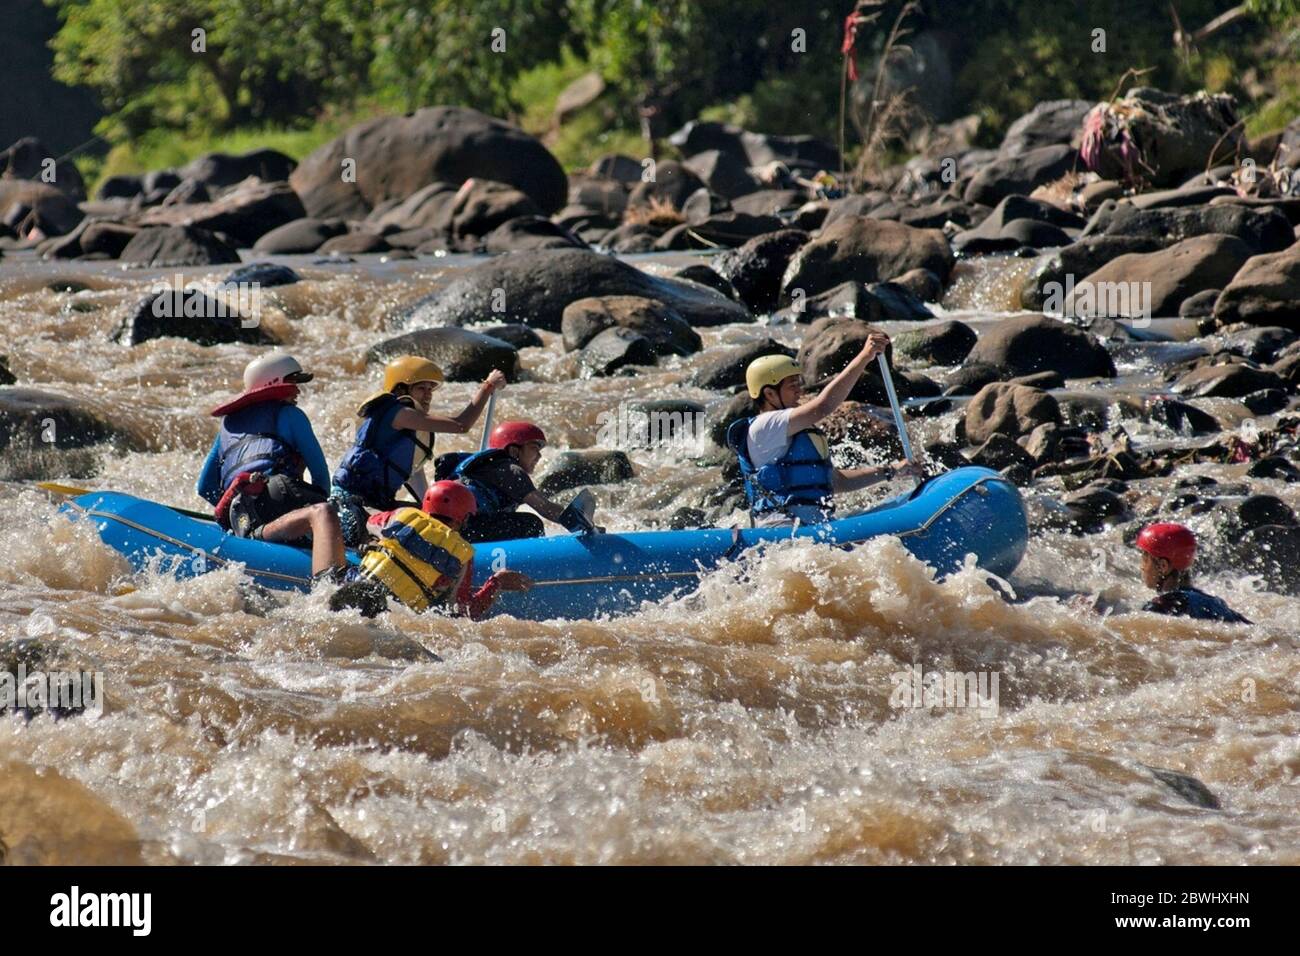 Gli studenti dell'Università dell'Indonesia manovrano la barca su una rapida fiume Cisadane a Giava Occidentale, Indonesia, praticando scenari di salvataggio su una possibile situazione di emergenza come parte di Mapala UI--il club di avventura all'aperto dell'università--programma di formazione per i tirocinanti. Foto di archivio (2009). Foto Stock